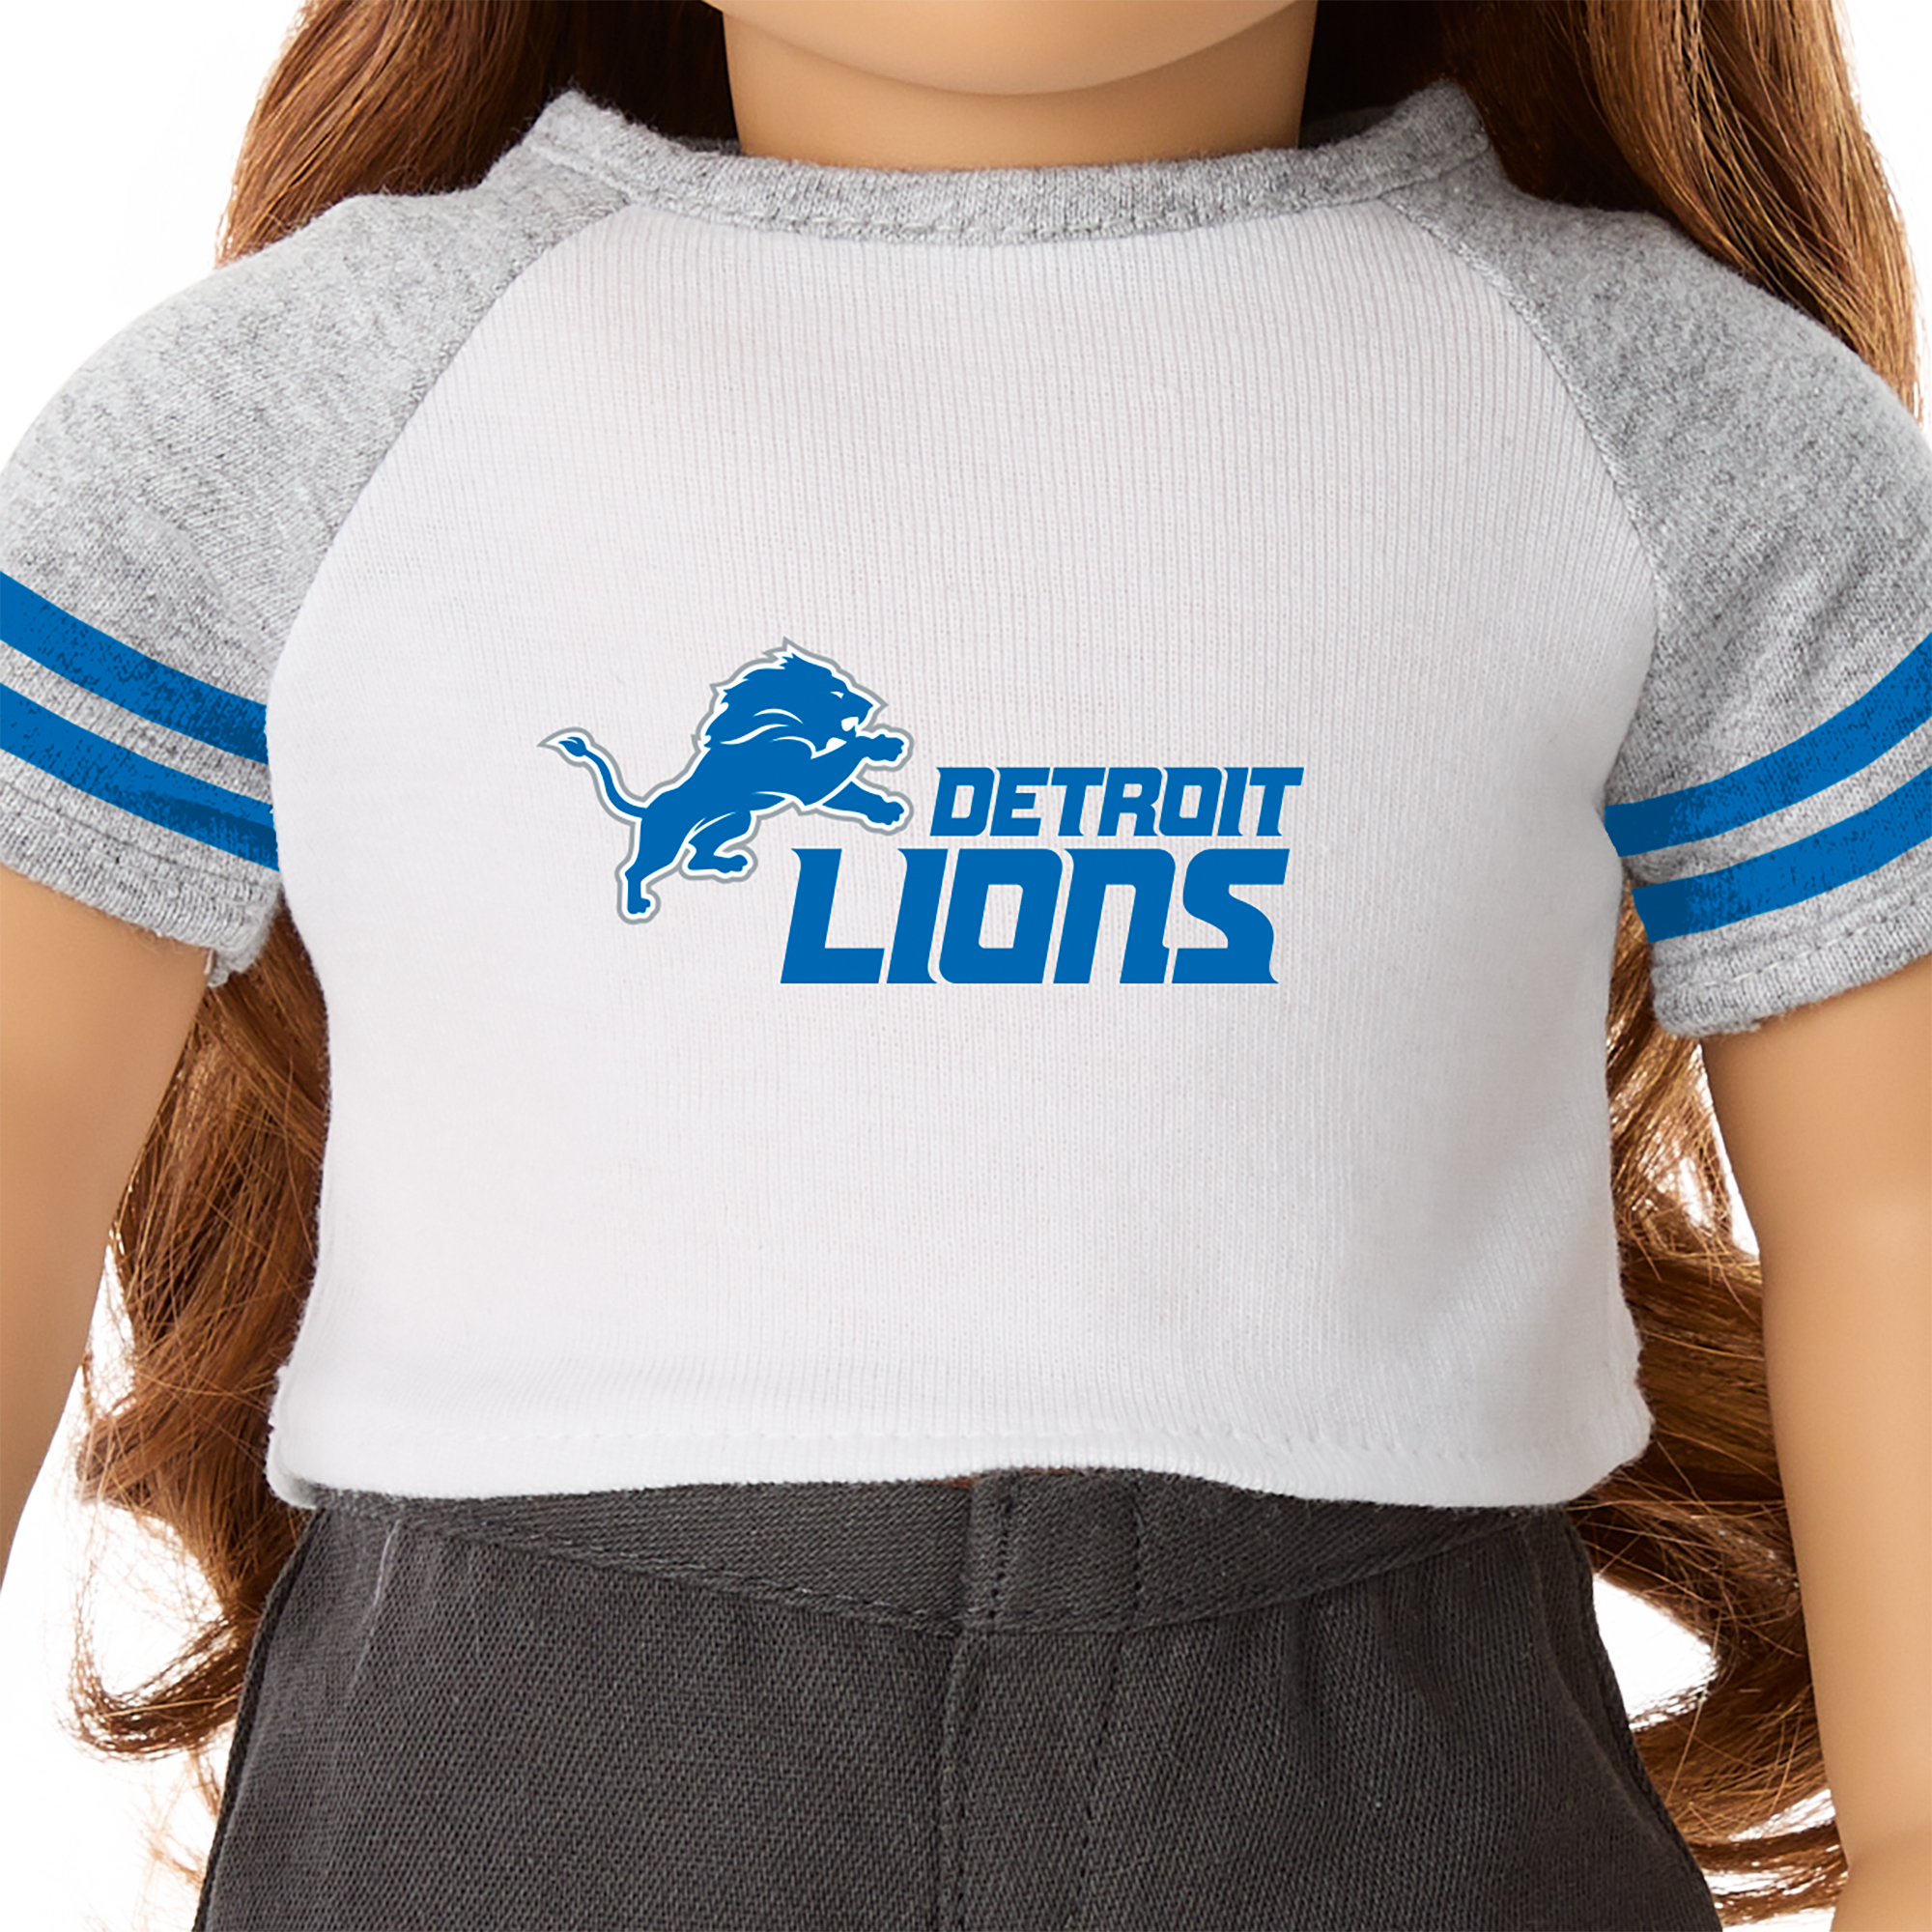 American Girl® x NFL Detroit Lions Fan Tee for 18-inch Dolls